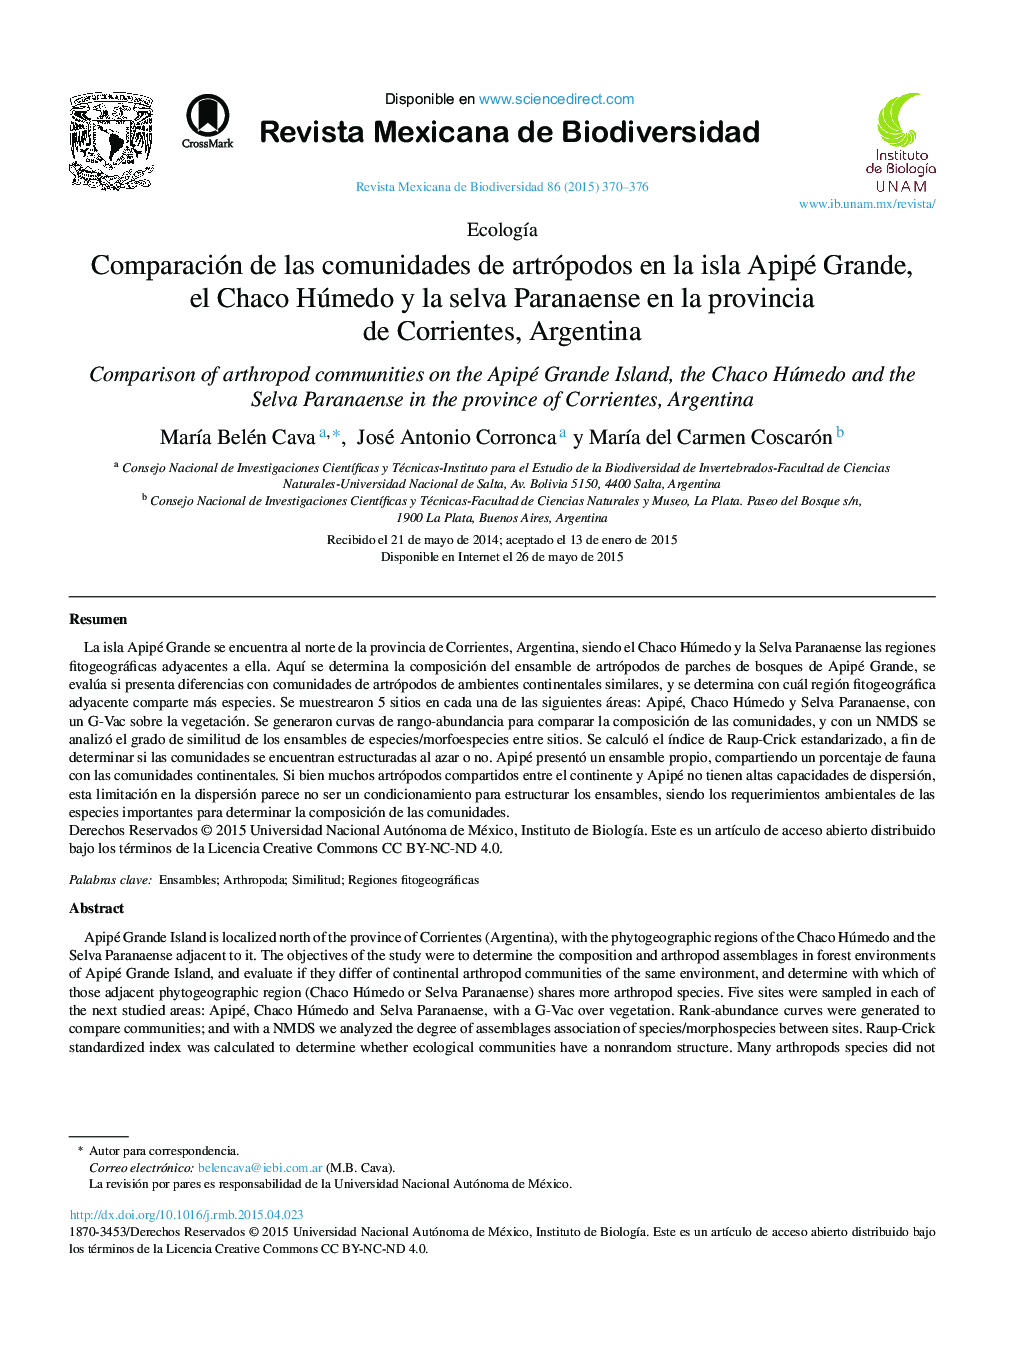 Comparación de las comunidades de artrópodos en la isla Apipé Grande, el Chaco Húmedo y la selva Paranaense en la provincia de Corrientes, Argentina 